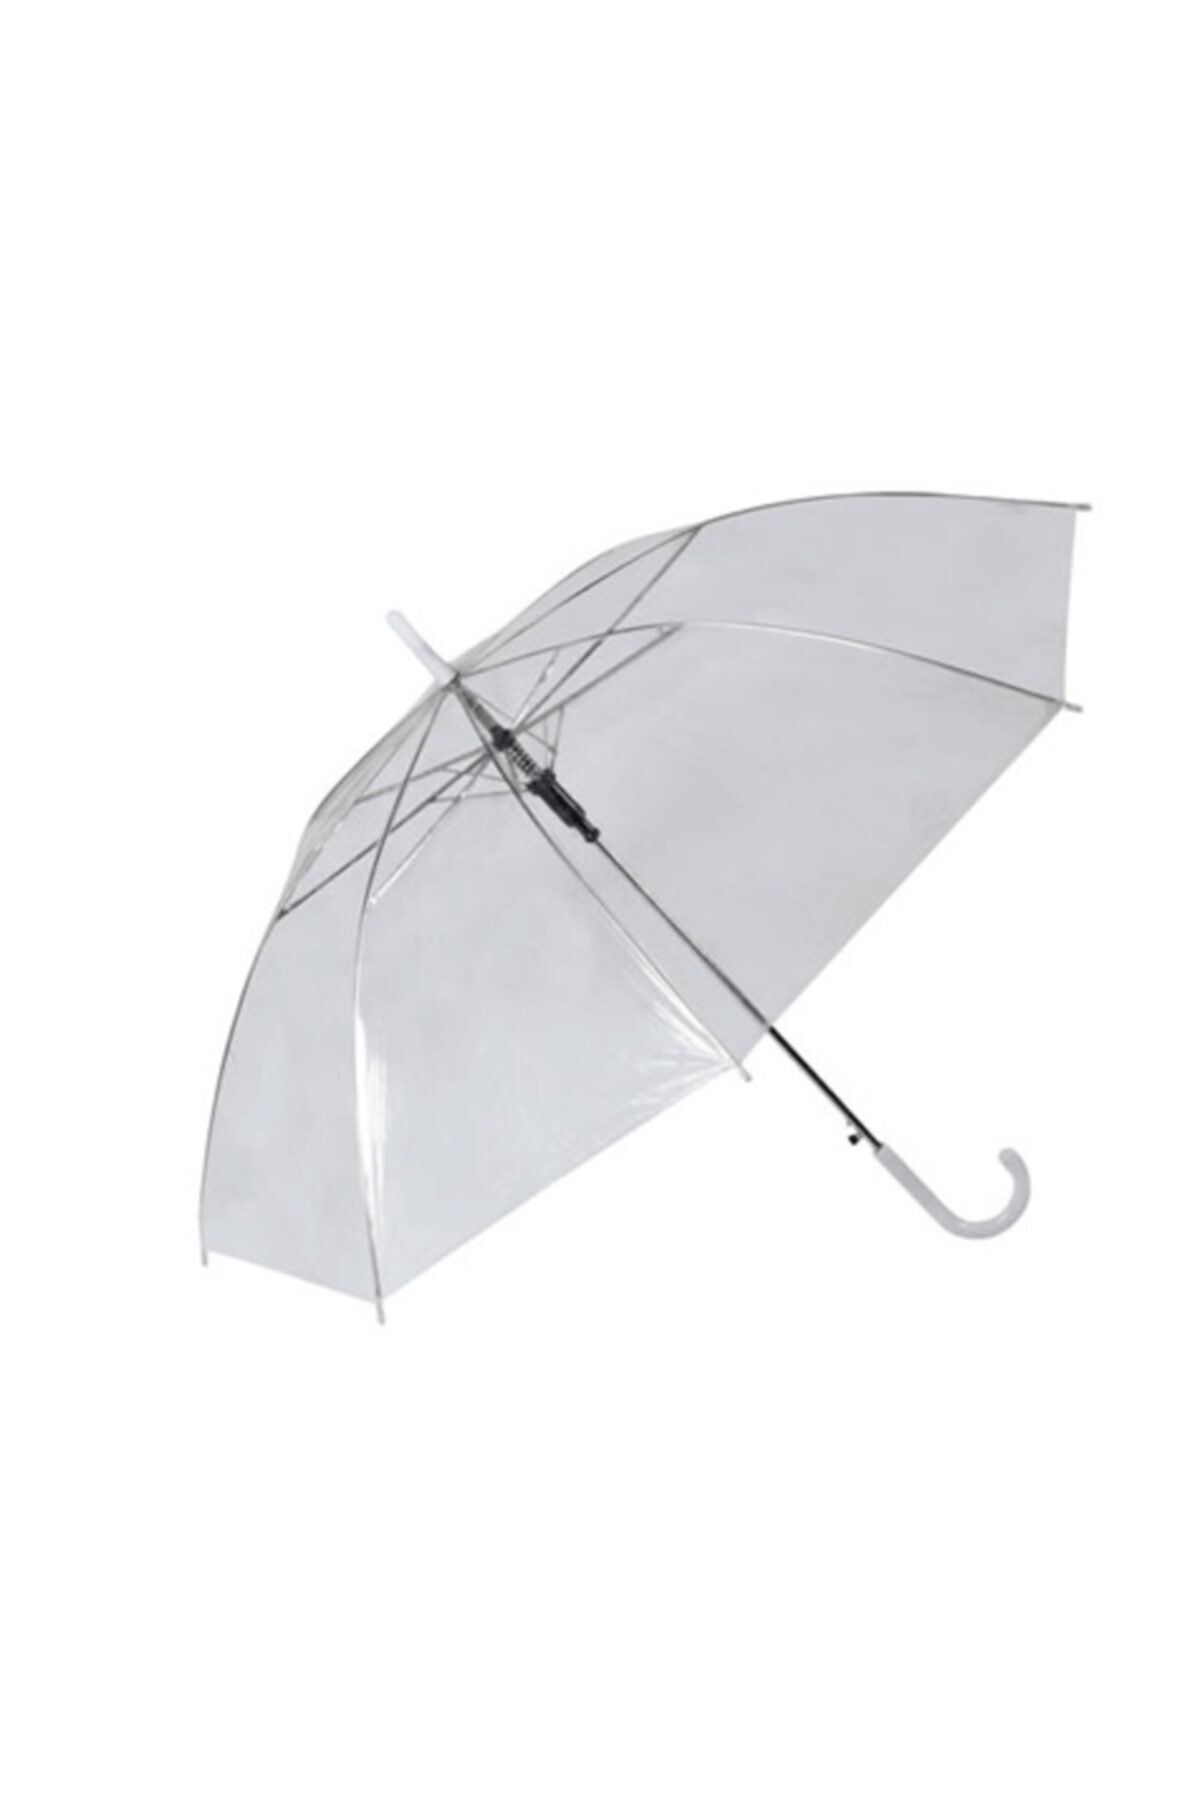 FırsatYeri Bayanlar Için Şeffaf Yağmurluk Tam Otomatik Şemsiyes